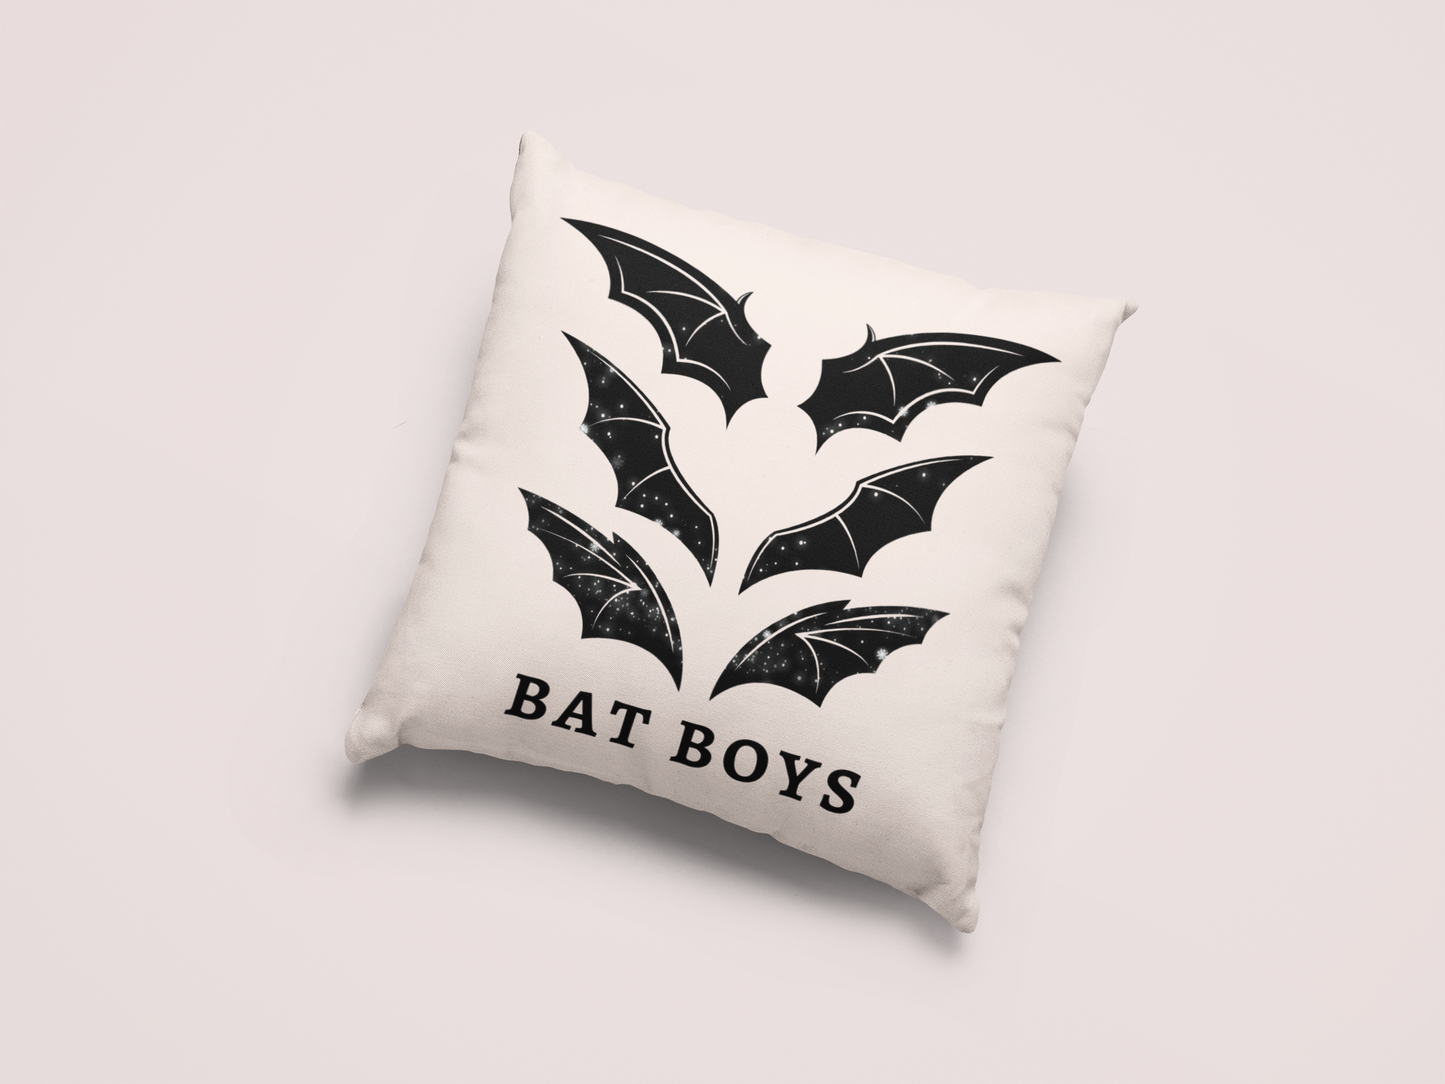 Bats Pillow Case